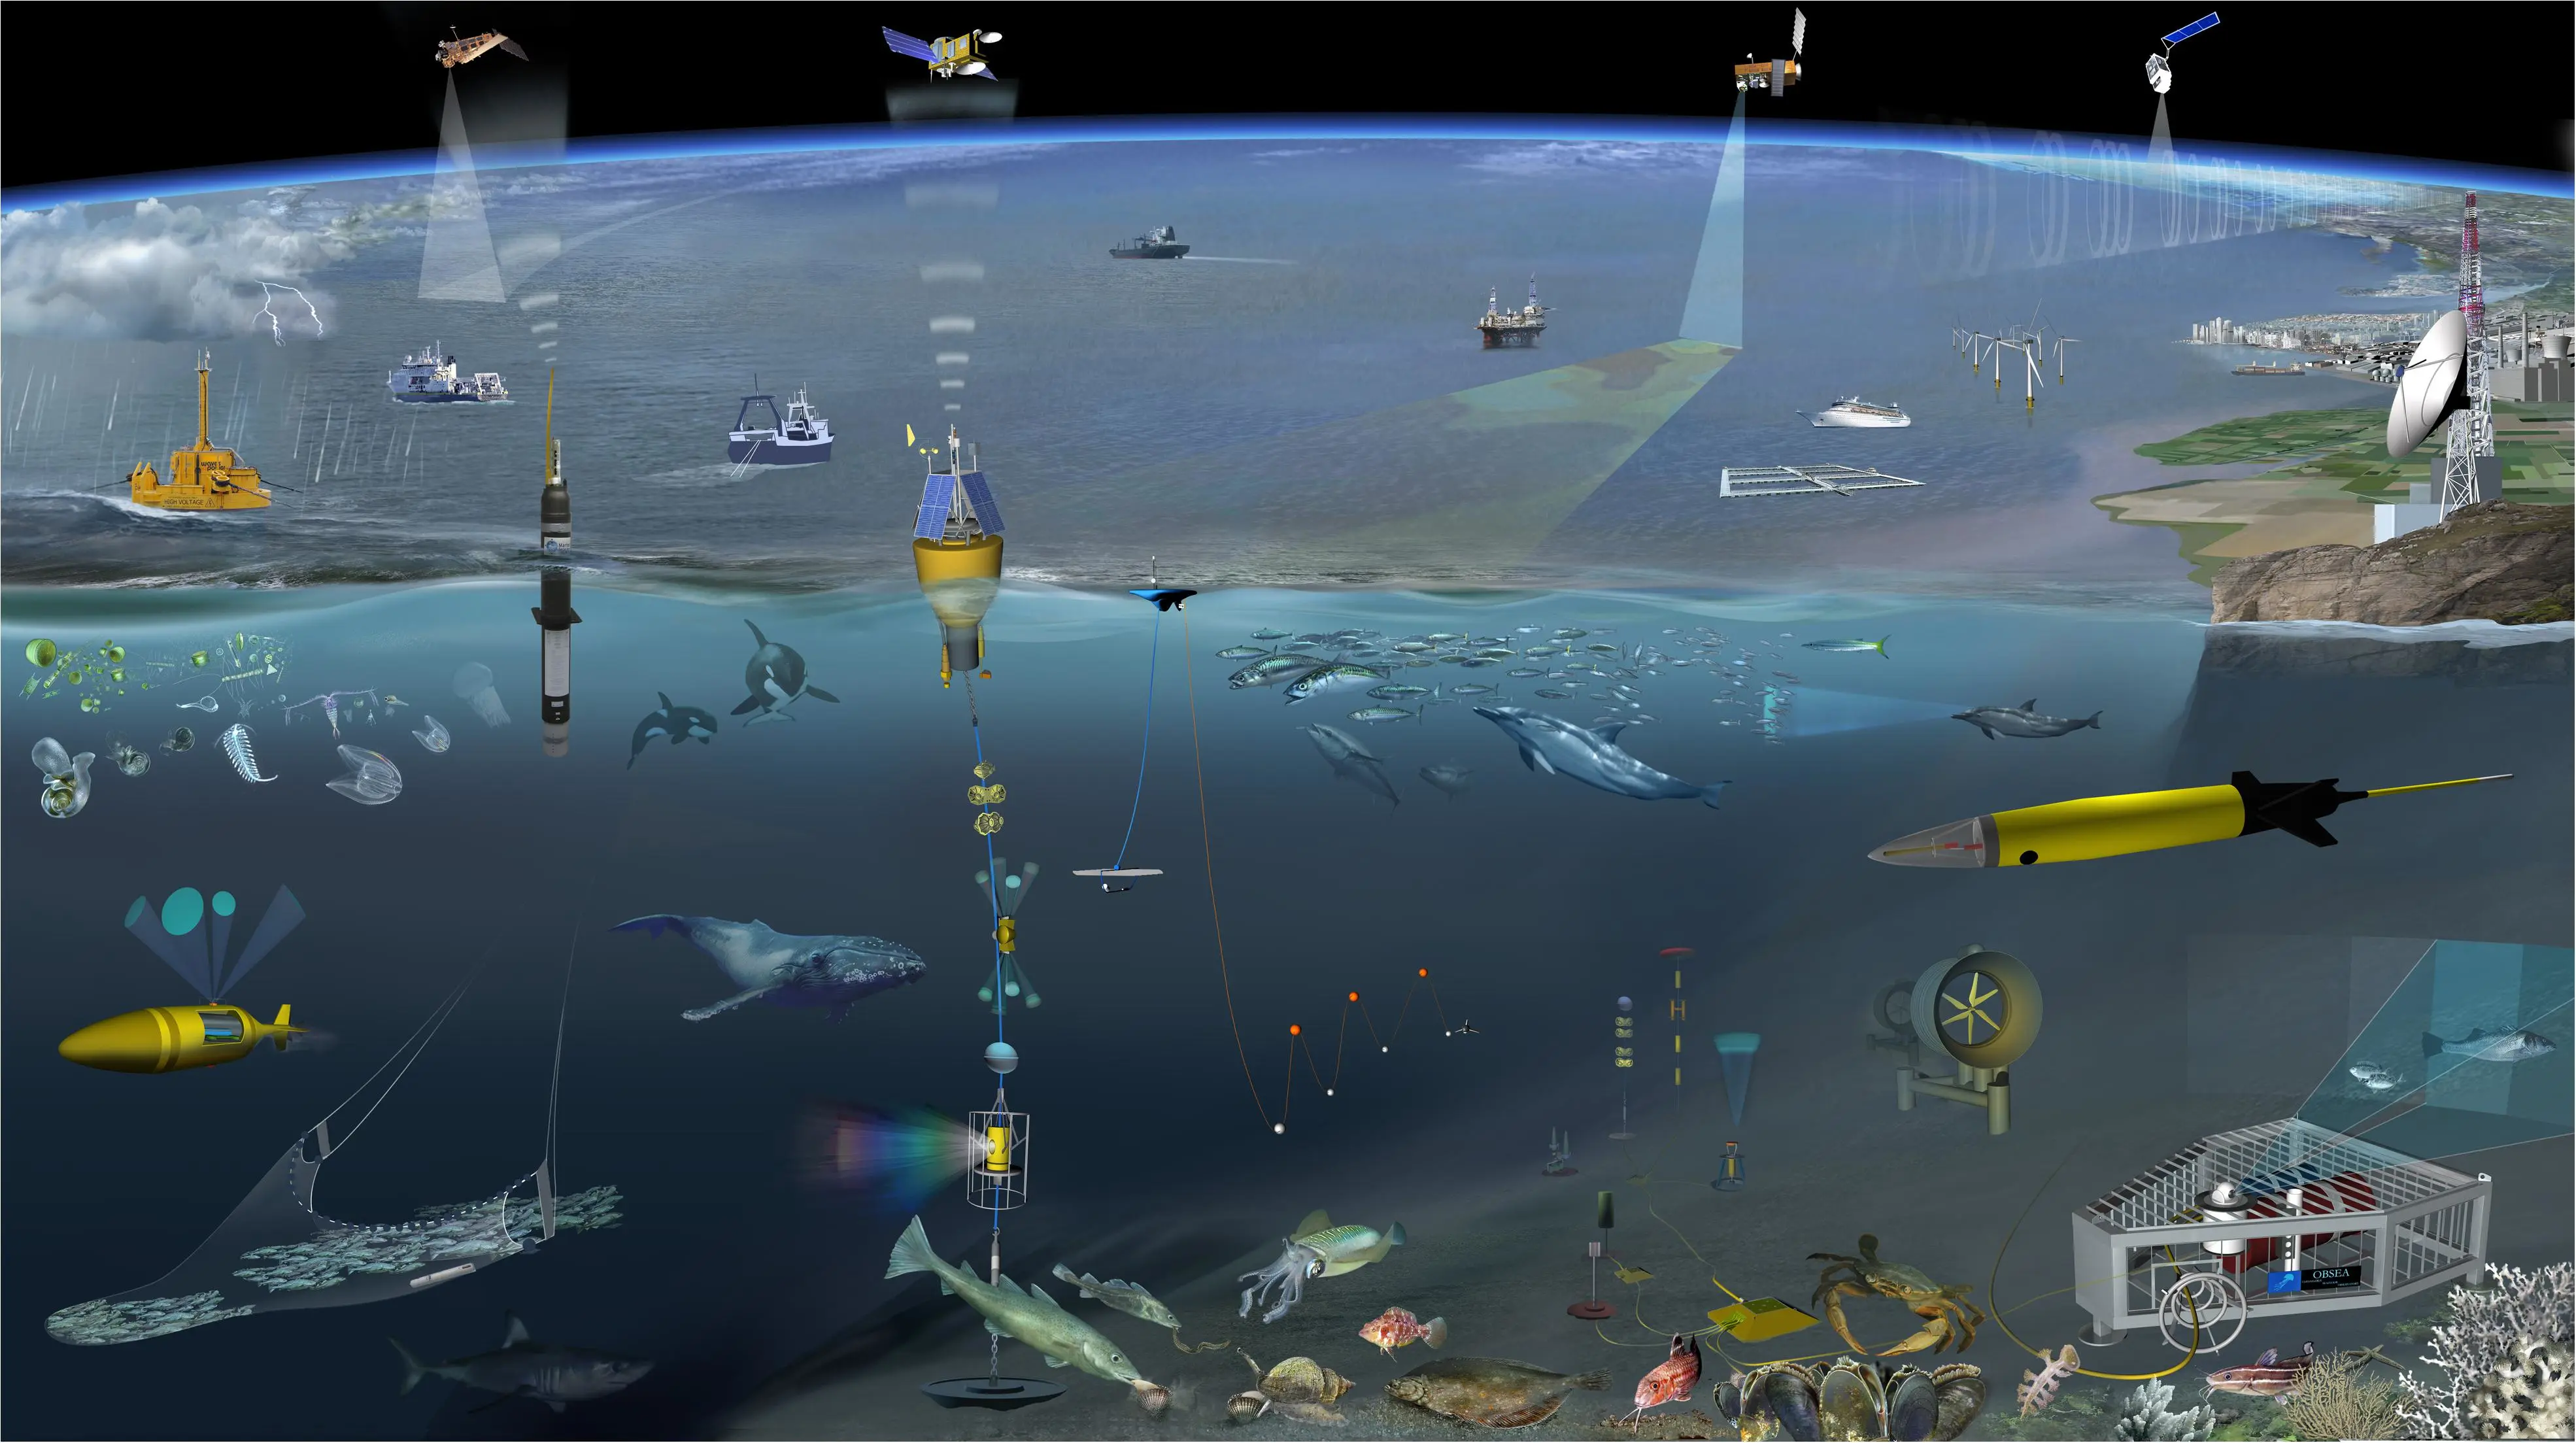 Future Vision for Autonomous Ocean Observations，C. Whitt et al.,  2020